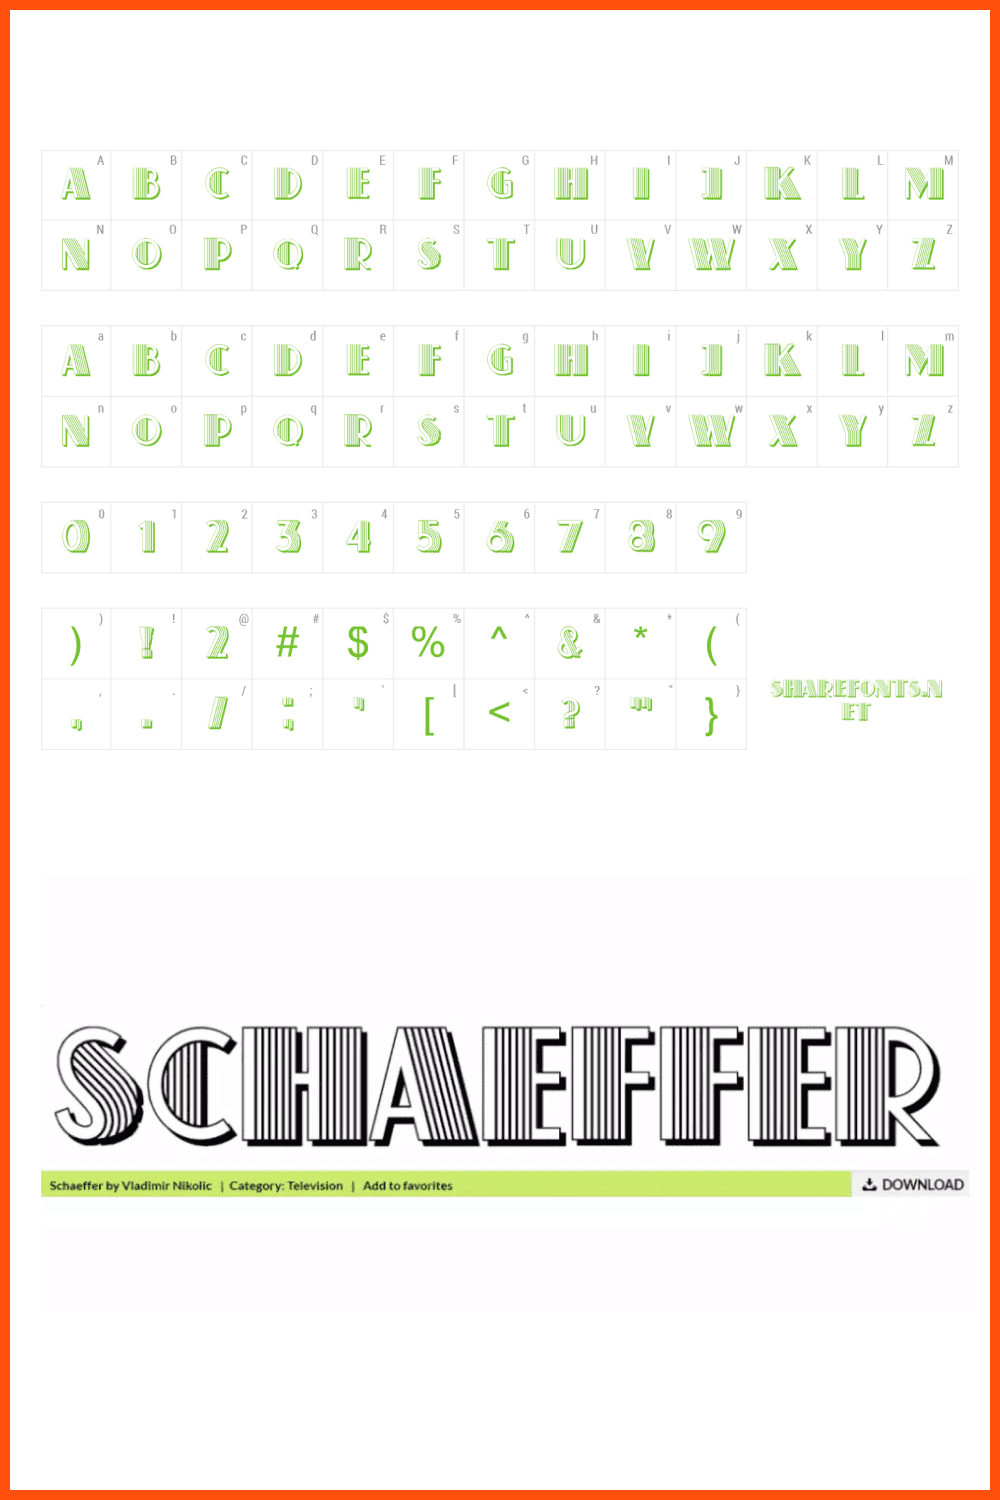 Schaeffer Free Sexy Font.